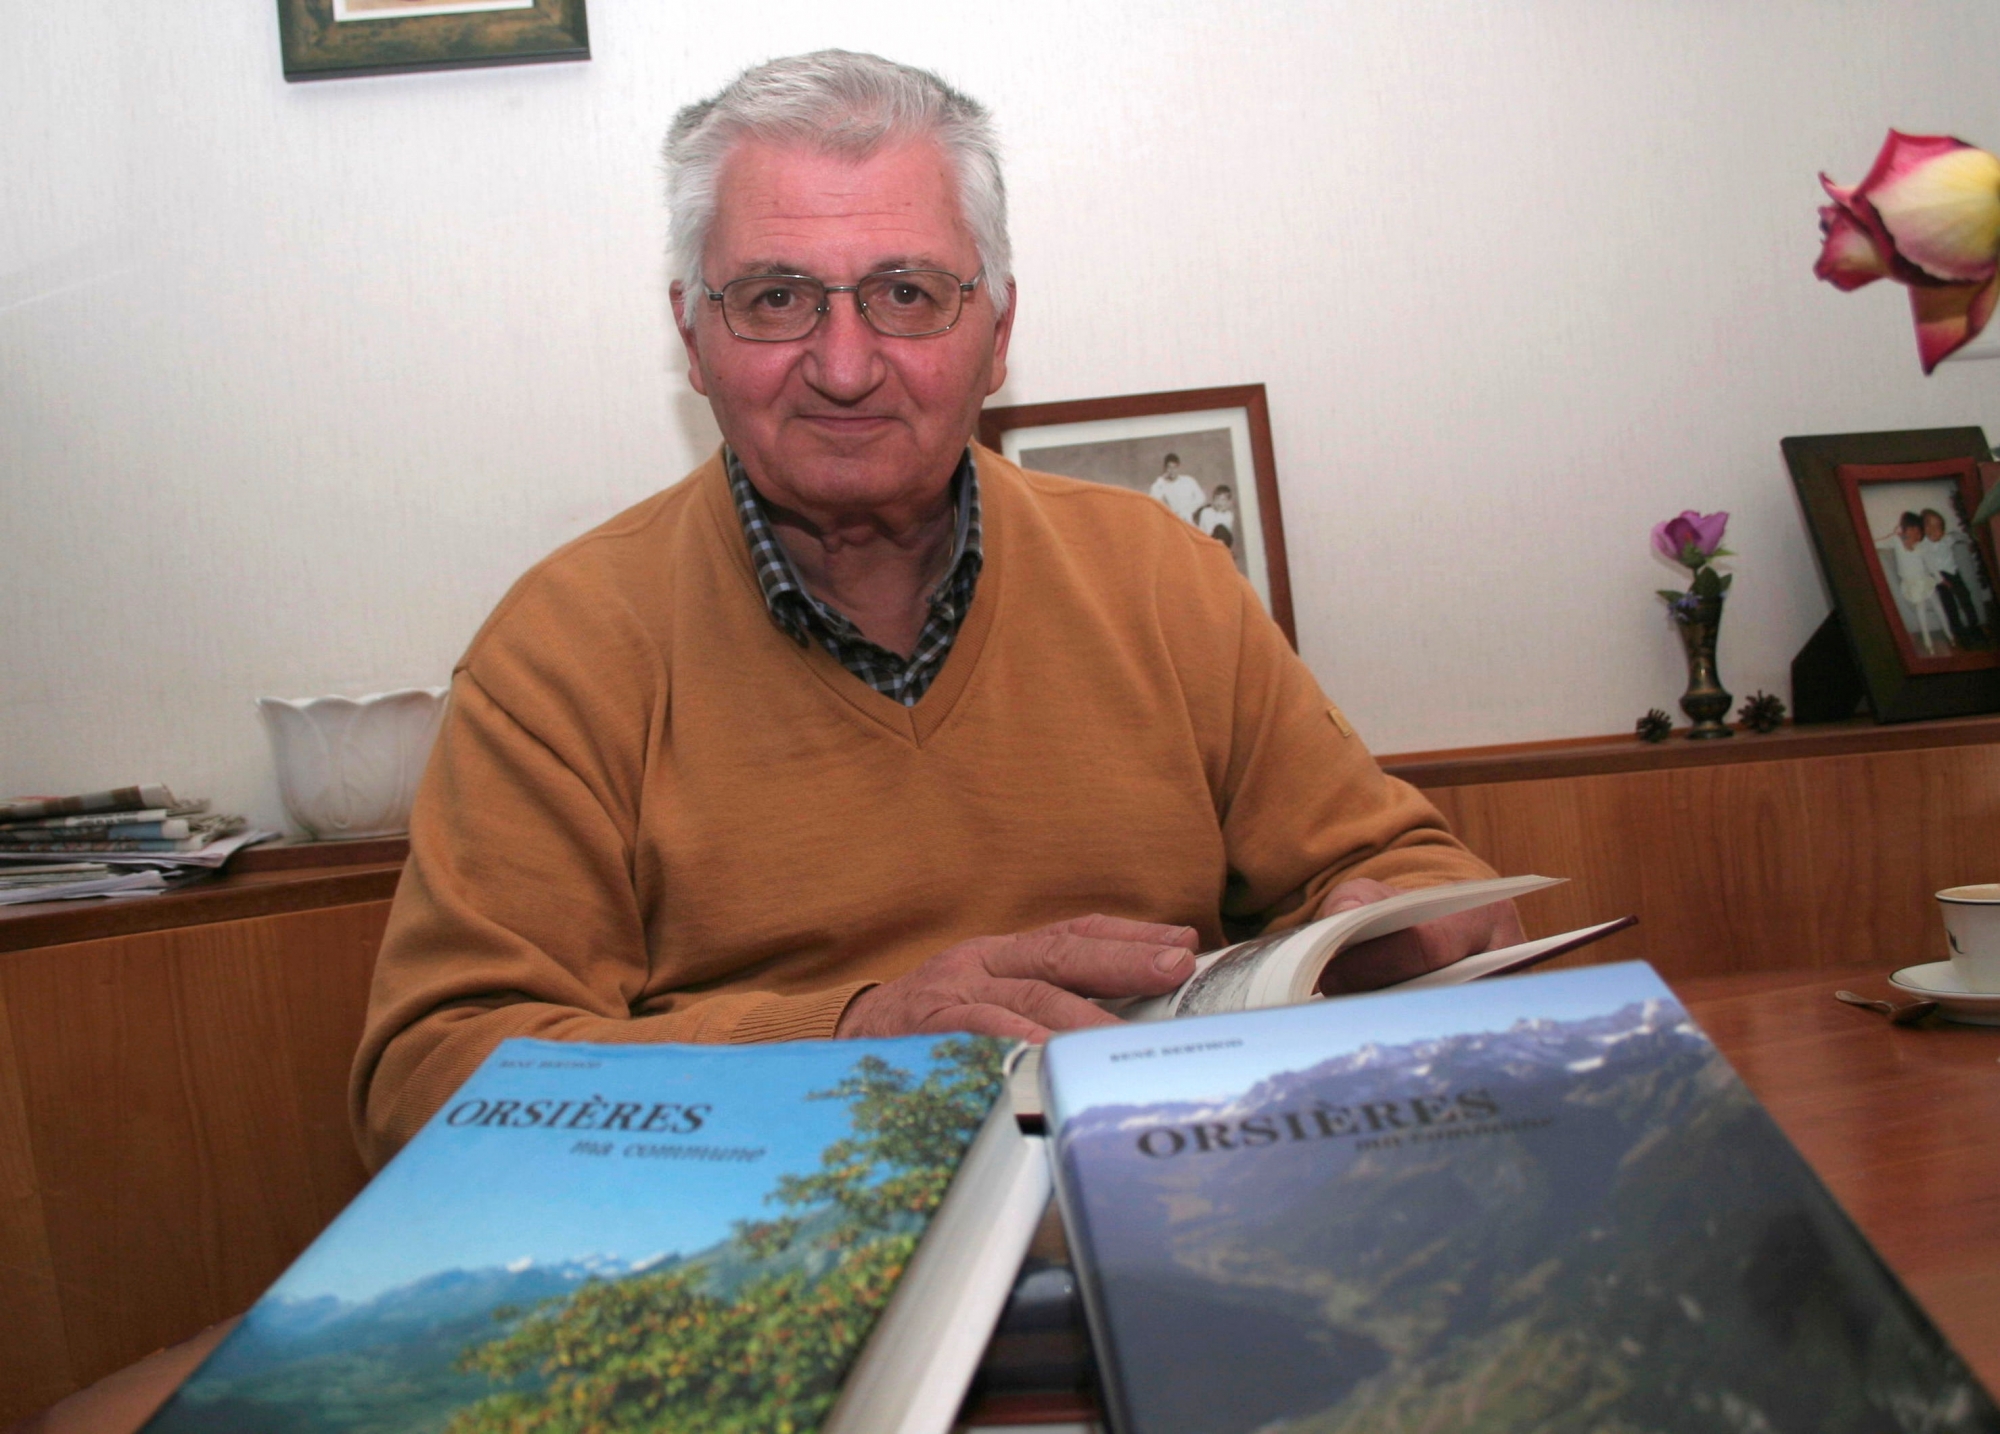 25 ans après la parution du livre 'Orsières, ma commune' (à gauche), René Berthod a repris la plume pour publier une nouvelle édition revue et augmentée (à droite). Le Nouvelliste